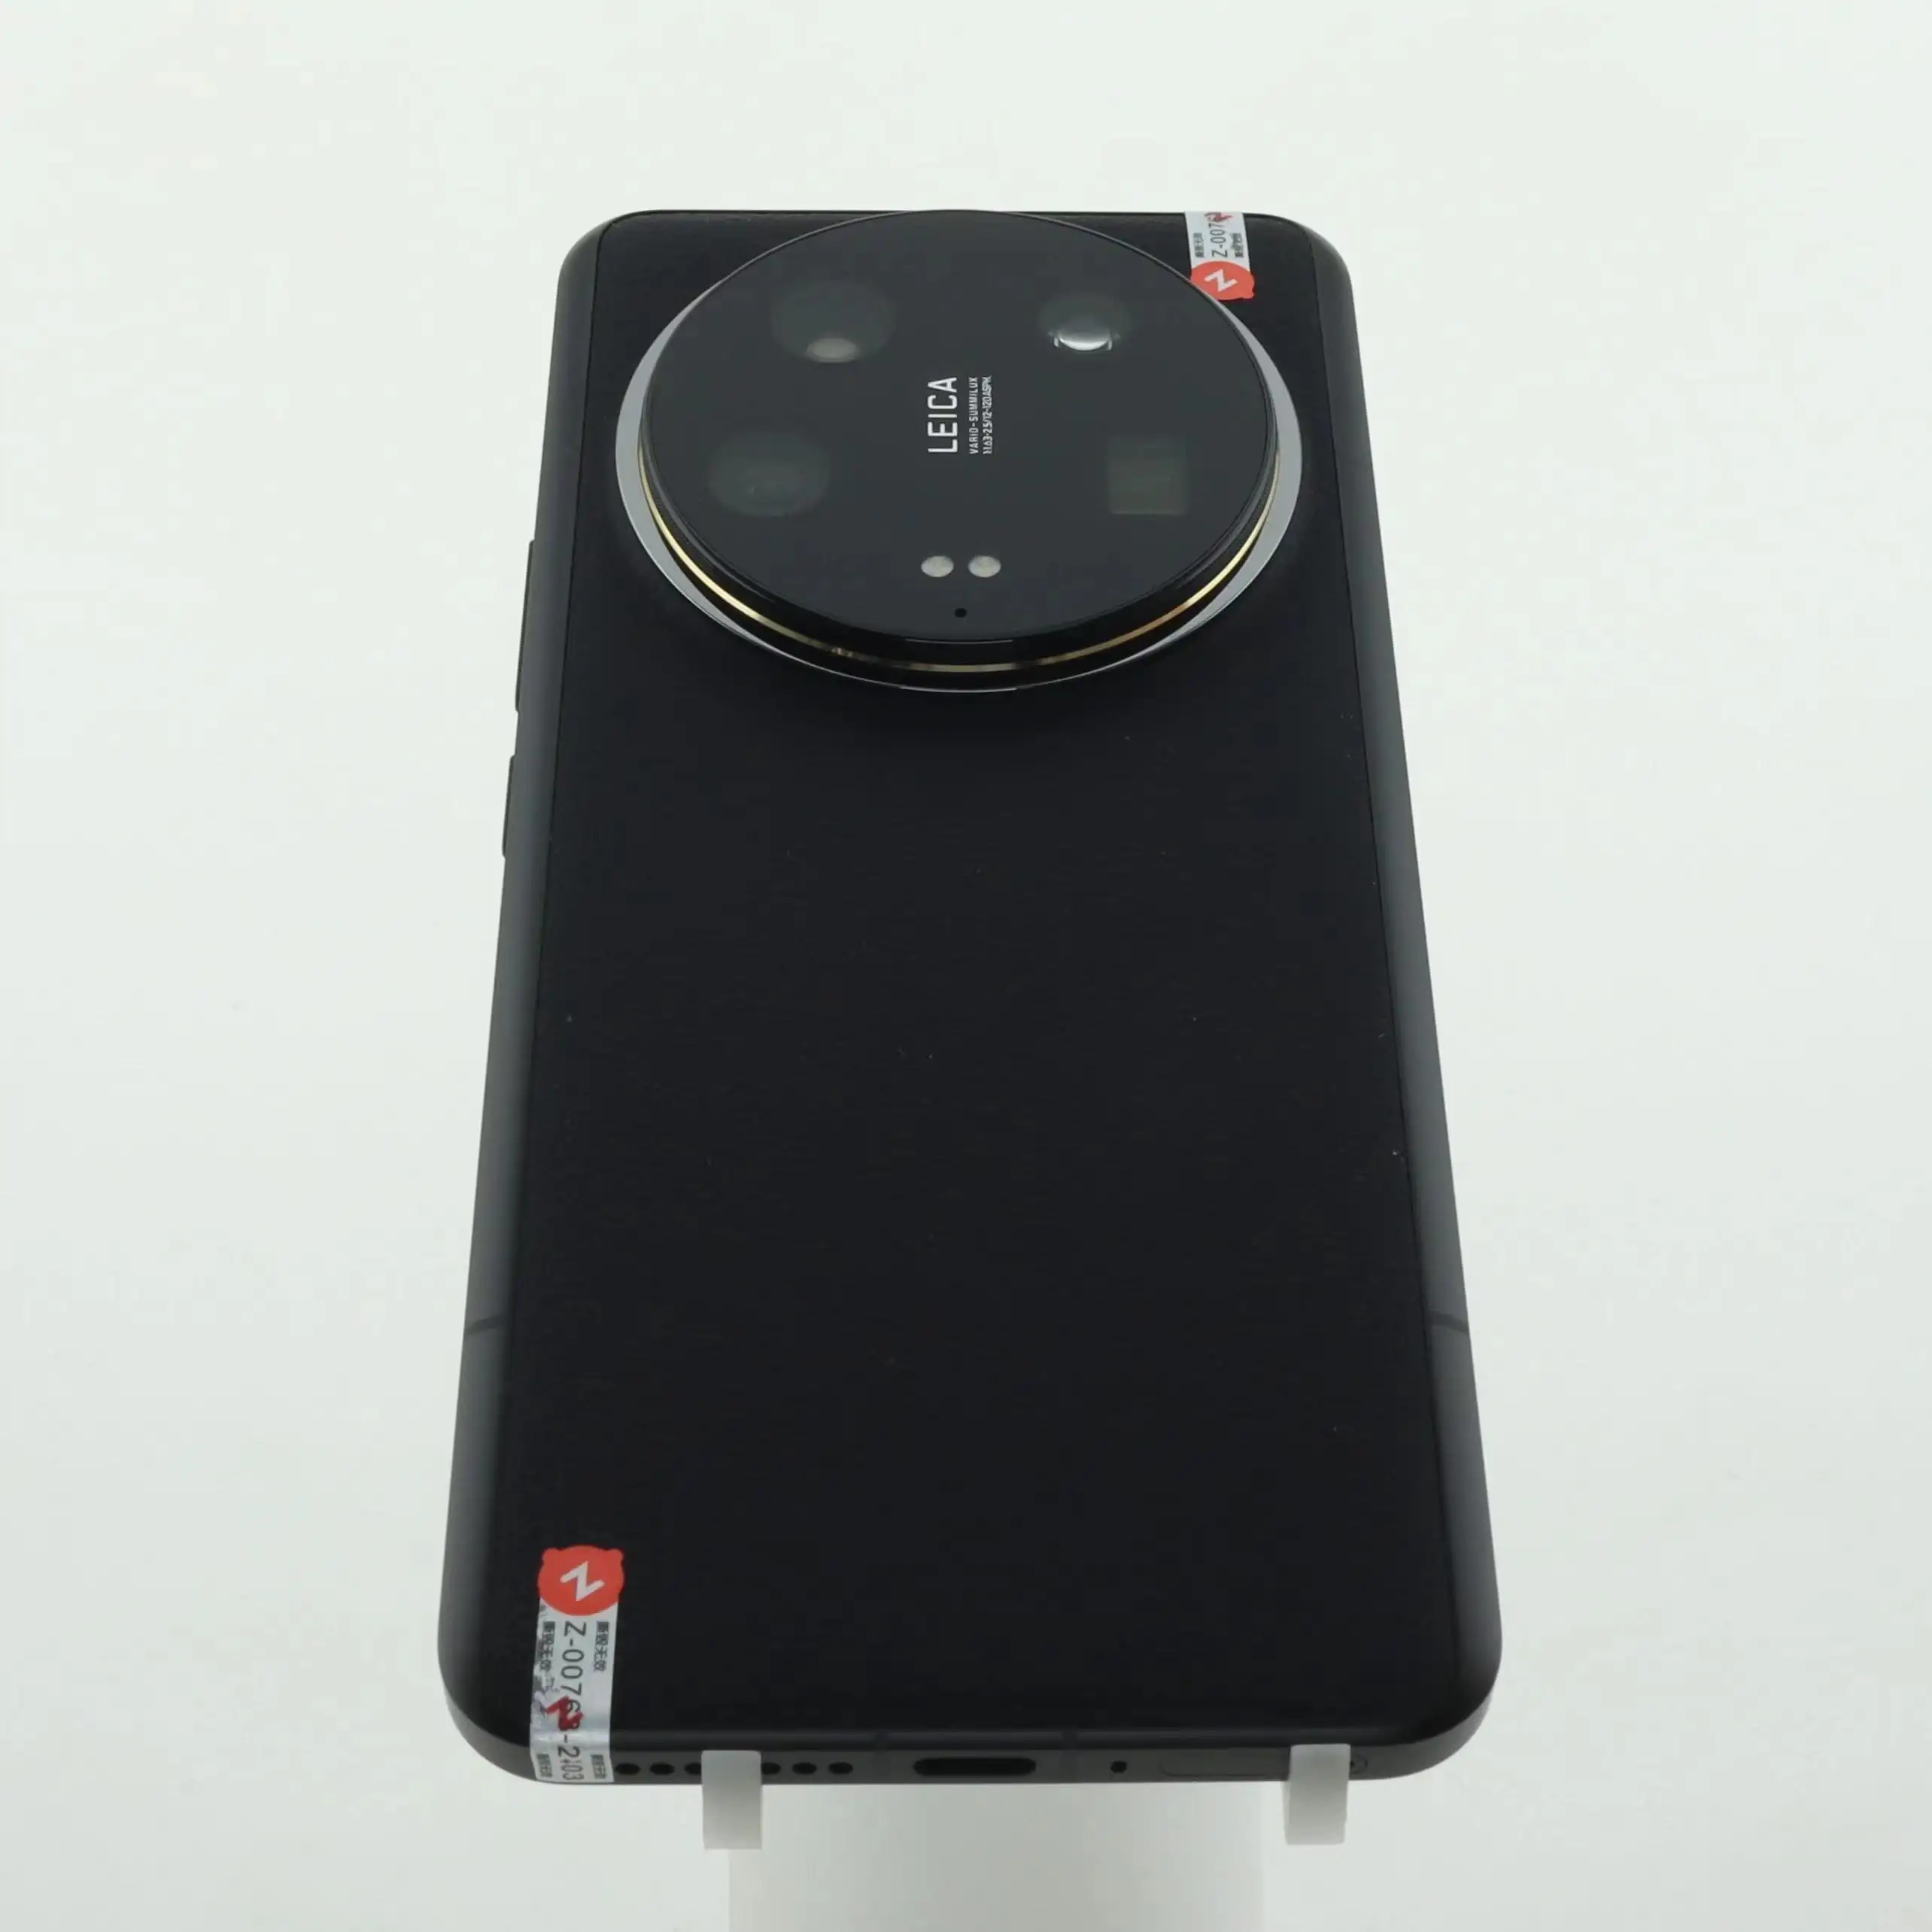 Proveedores verificados Xiaomi 14 Ultra Series Consola de juegos Teléfonos Infinix Robusto Barato Usado Android Celulares 5g Teléfono inteligente 8 Ram